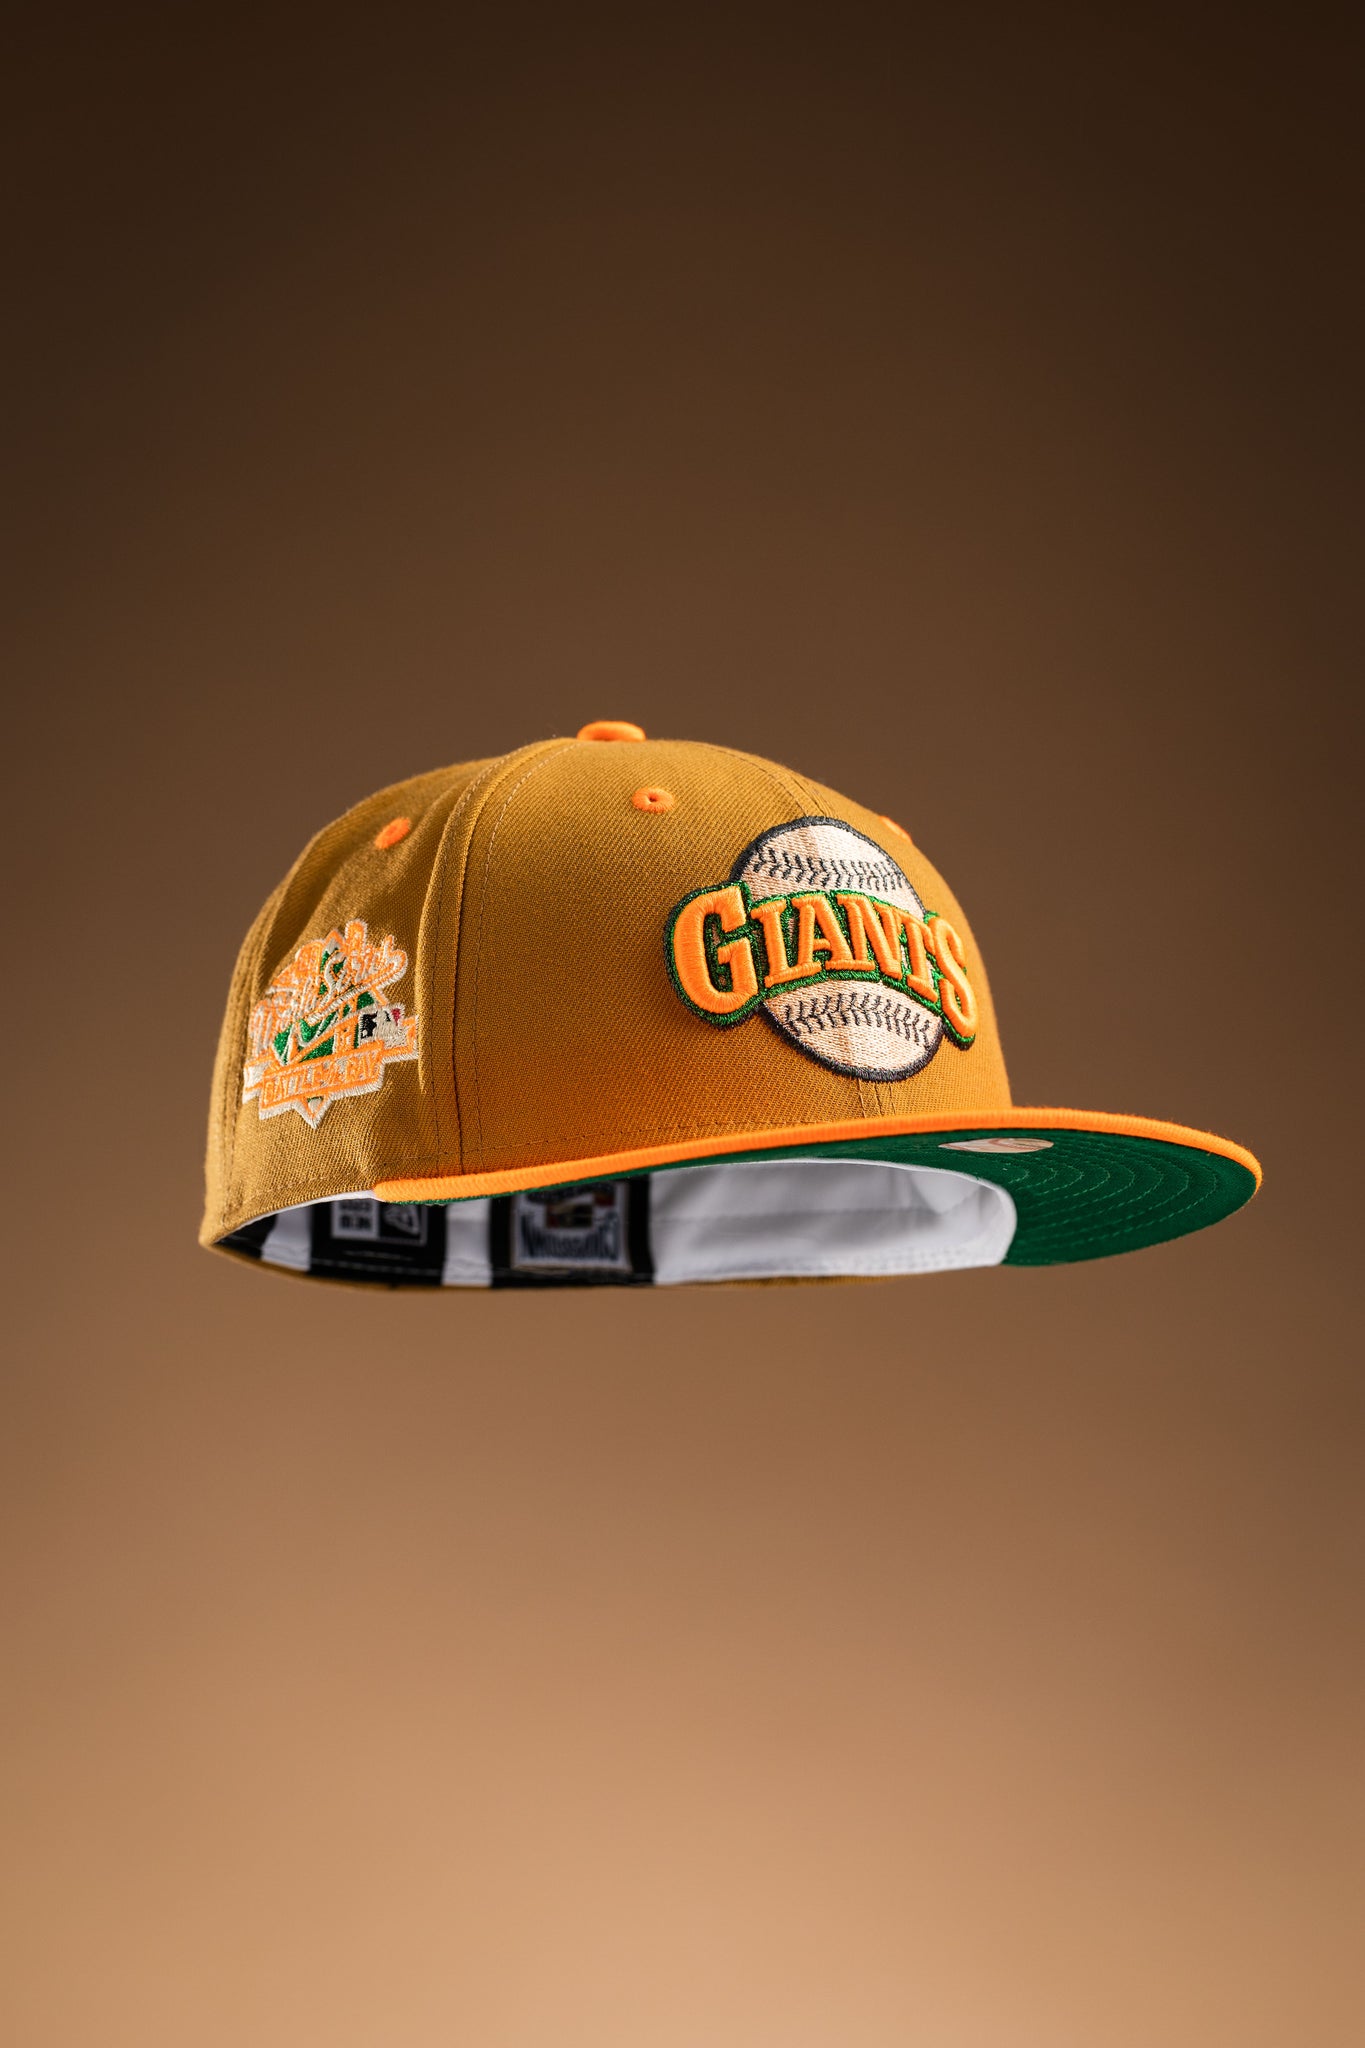 miami giants hat